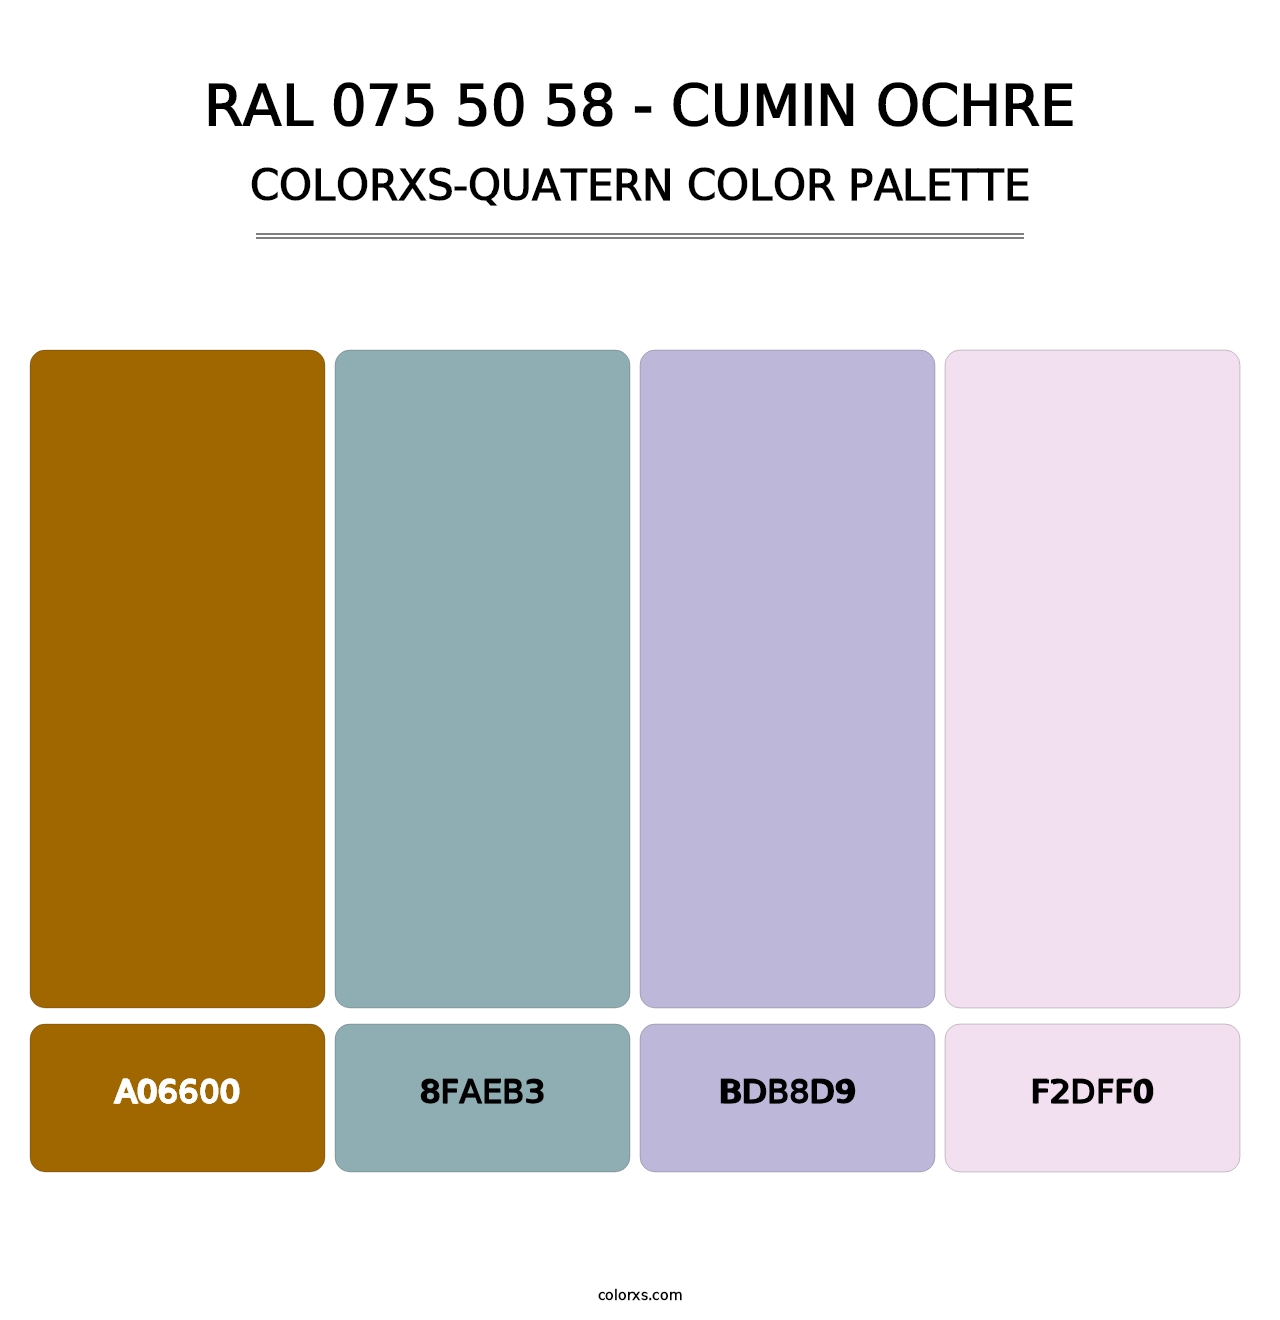 RAL 075 50 58 - Cumin Ochre - Colorxs Quatern Palette